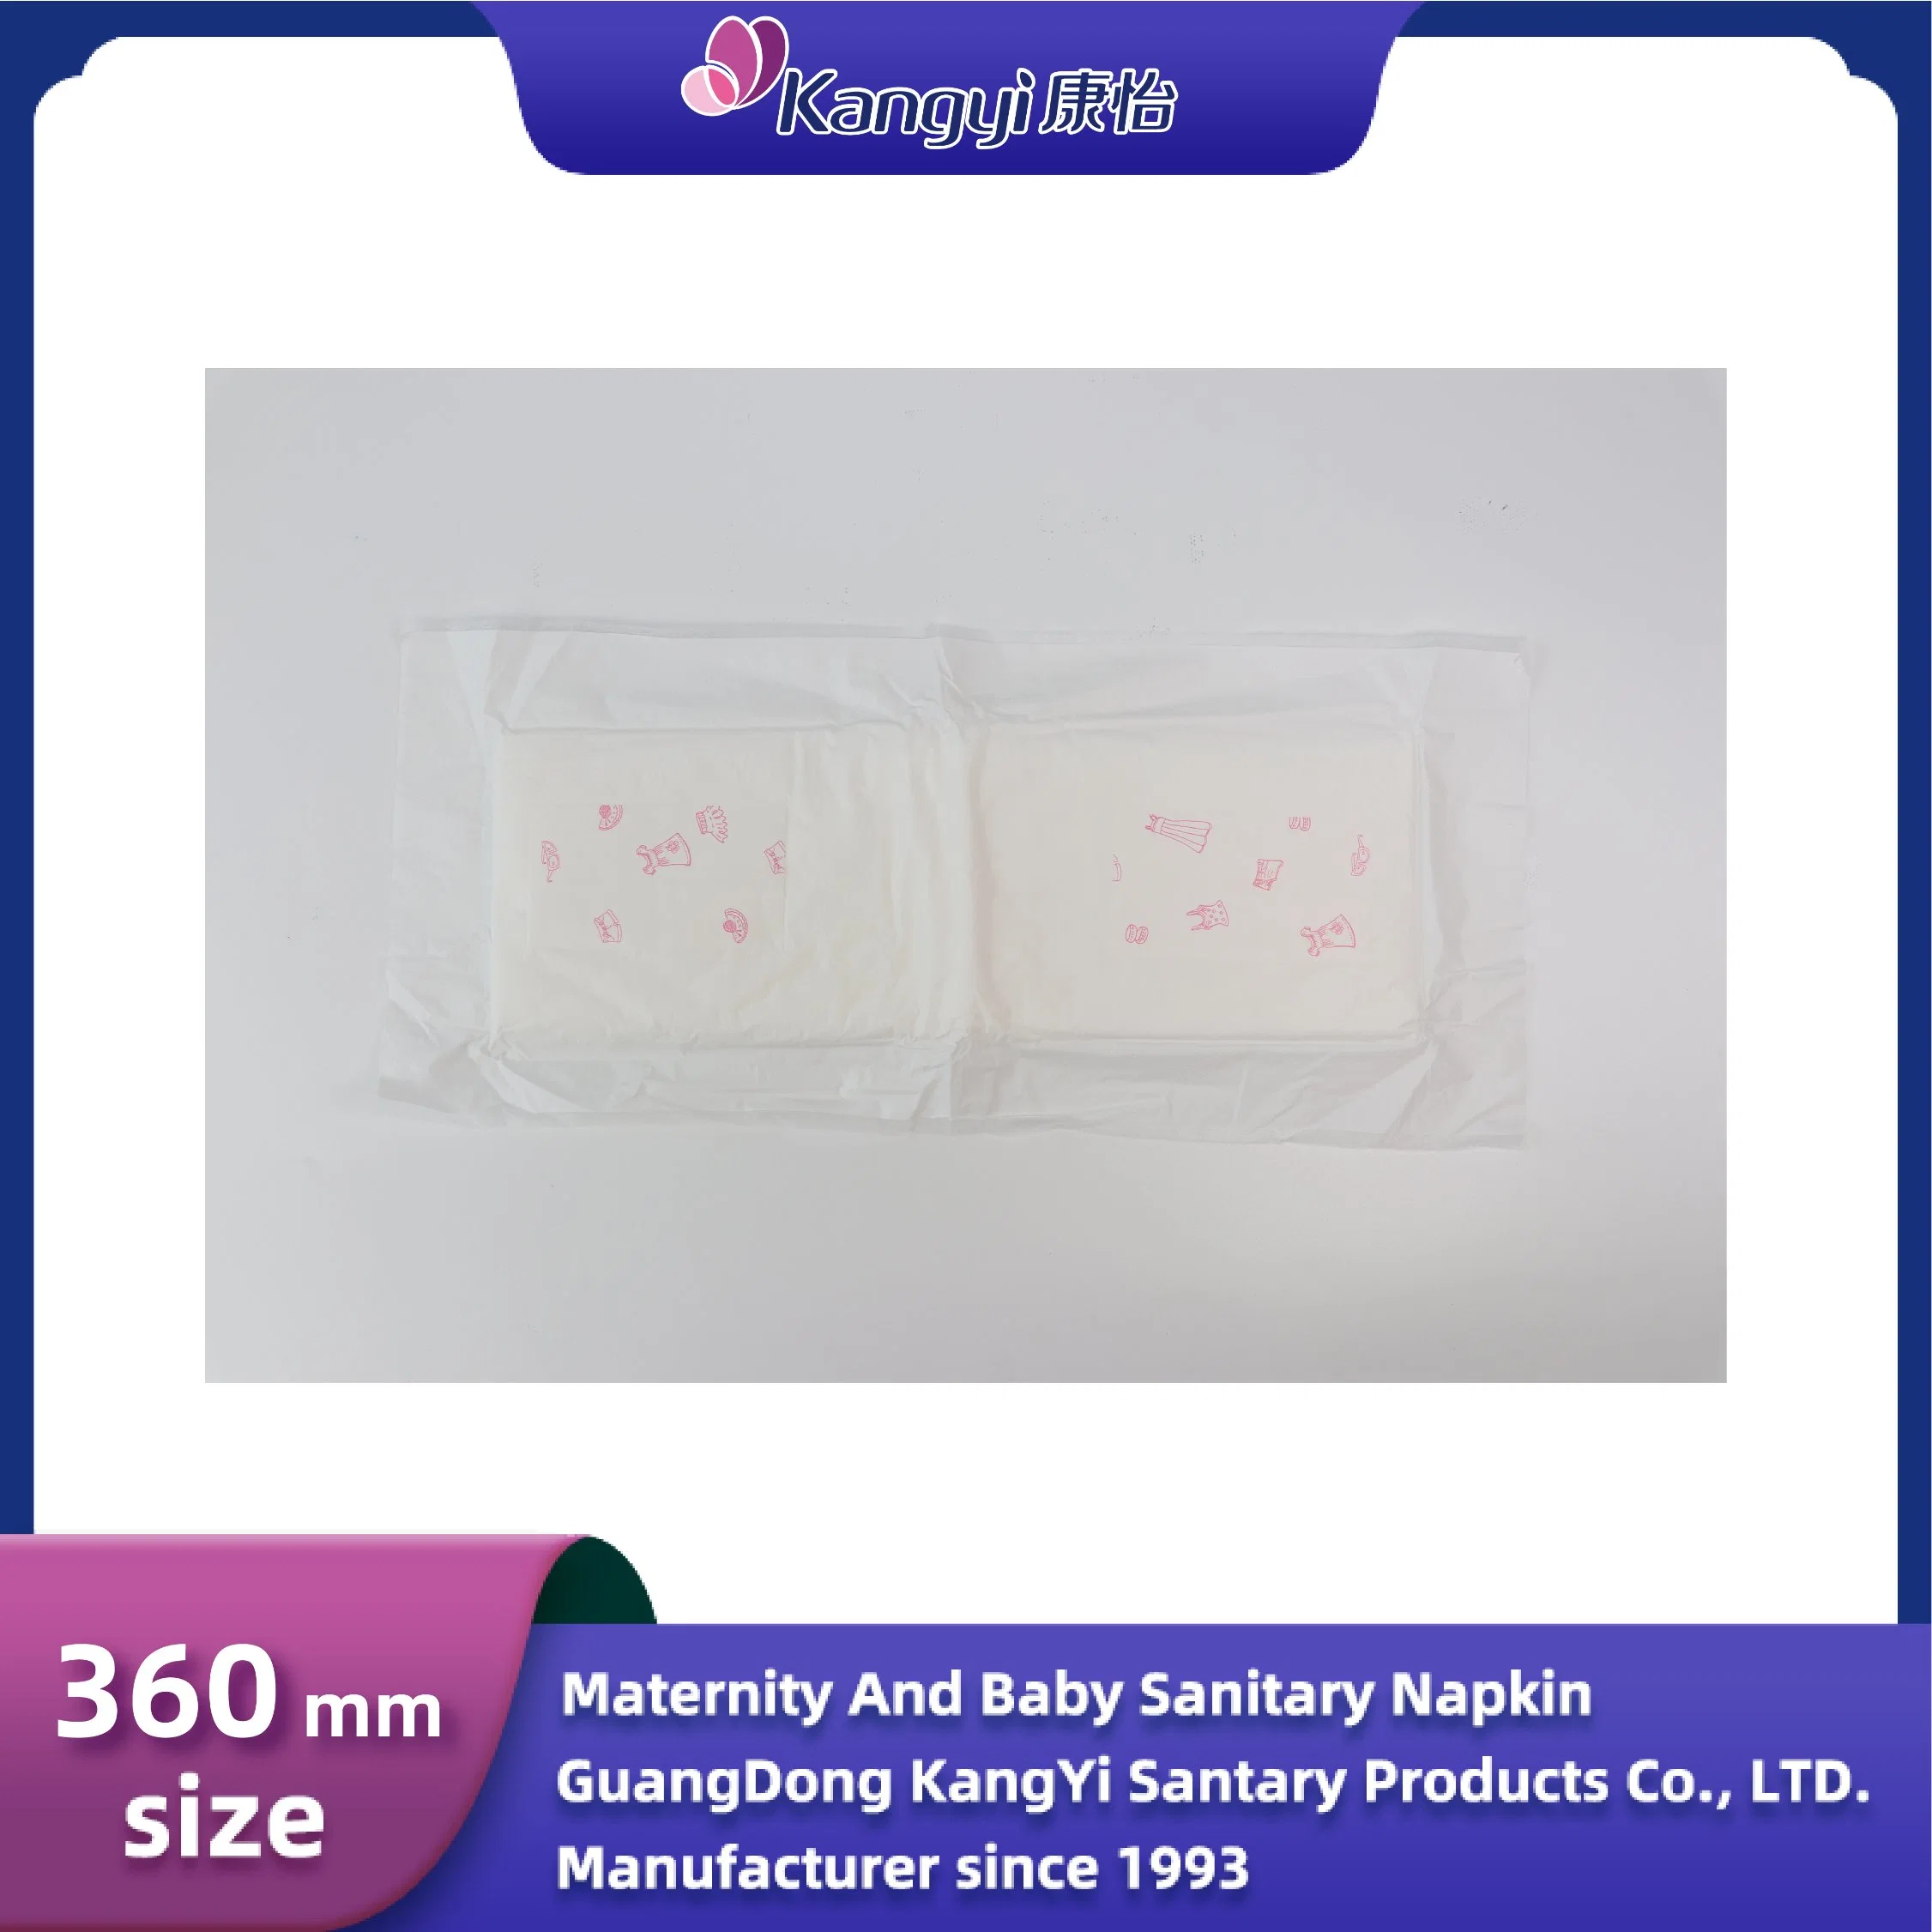 Fabricant en gros de serviettes post-partum jetables respirantes et antidérapantes pour le jour et la nuit pour les femmes et les bébés.